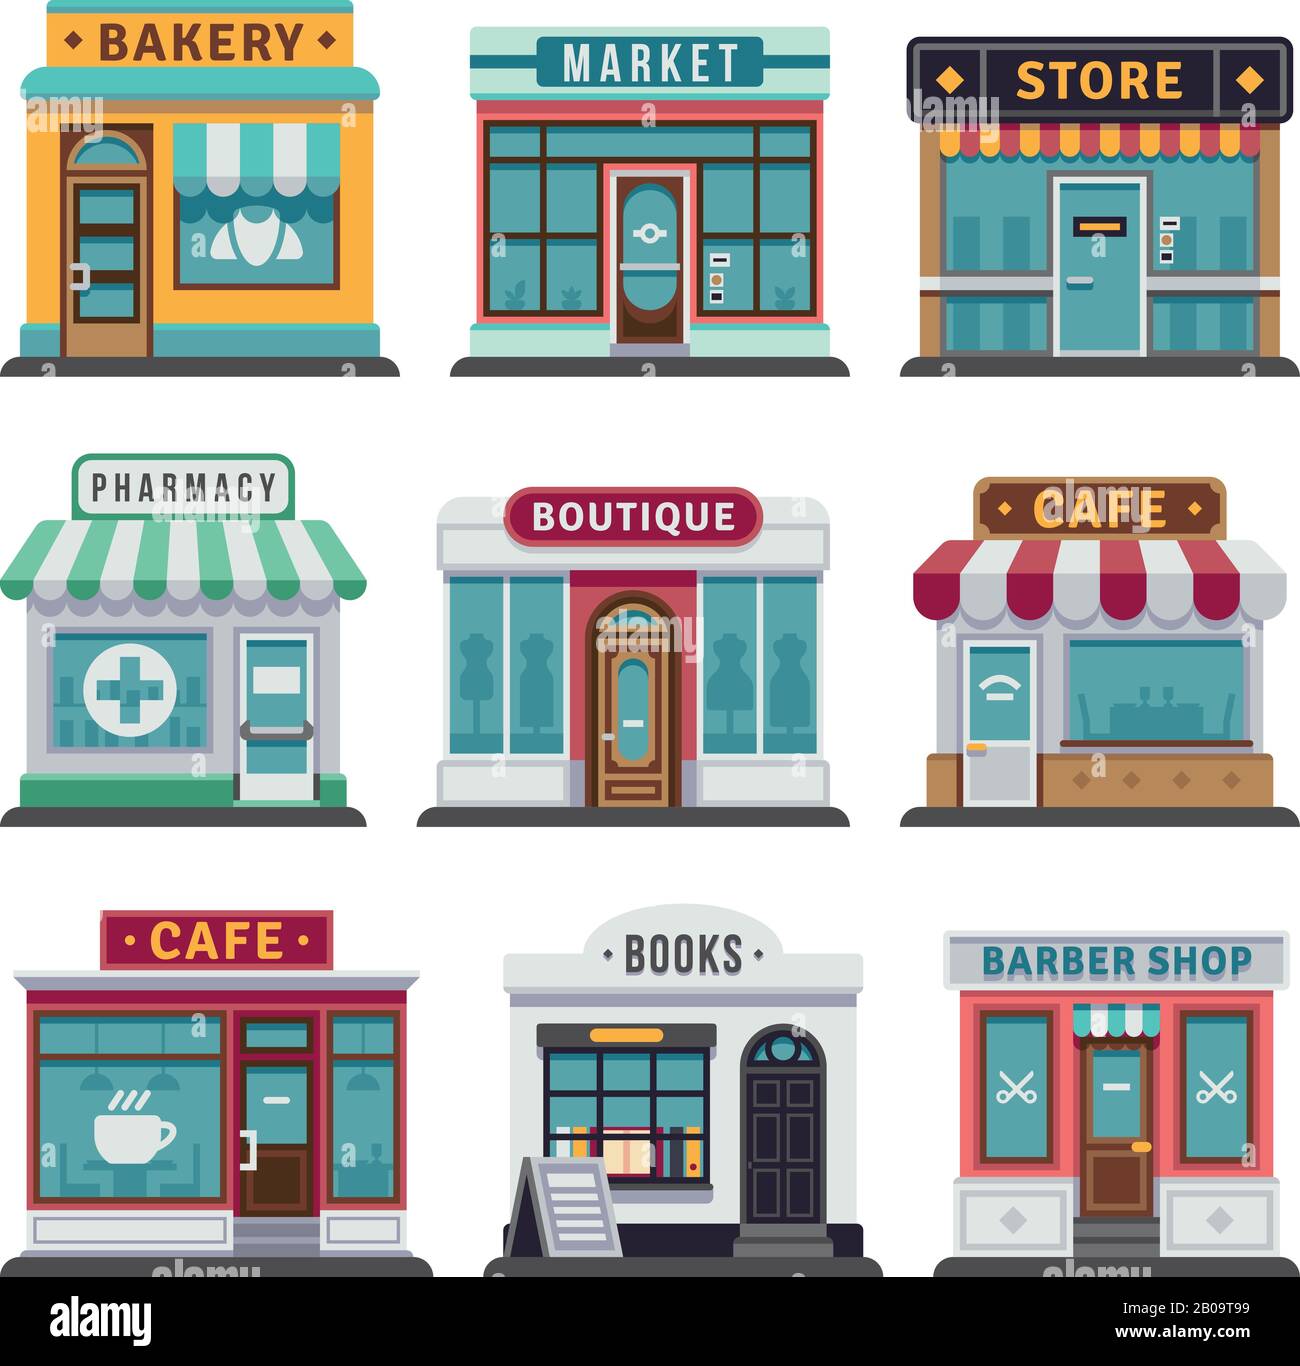 Commercio al dettaglio negozio urbano, negozio. Mercato e panetteria, caffè e boutique, vecto barber negozio illustrazione Illustrazione Vettoriale